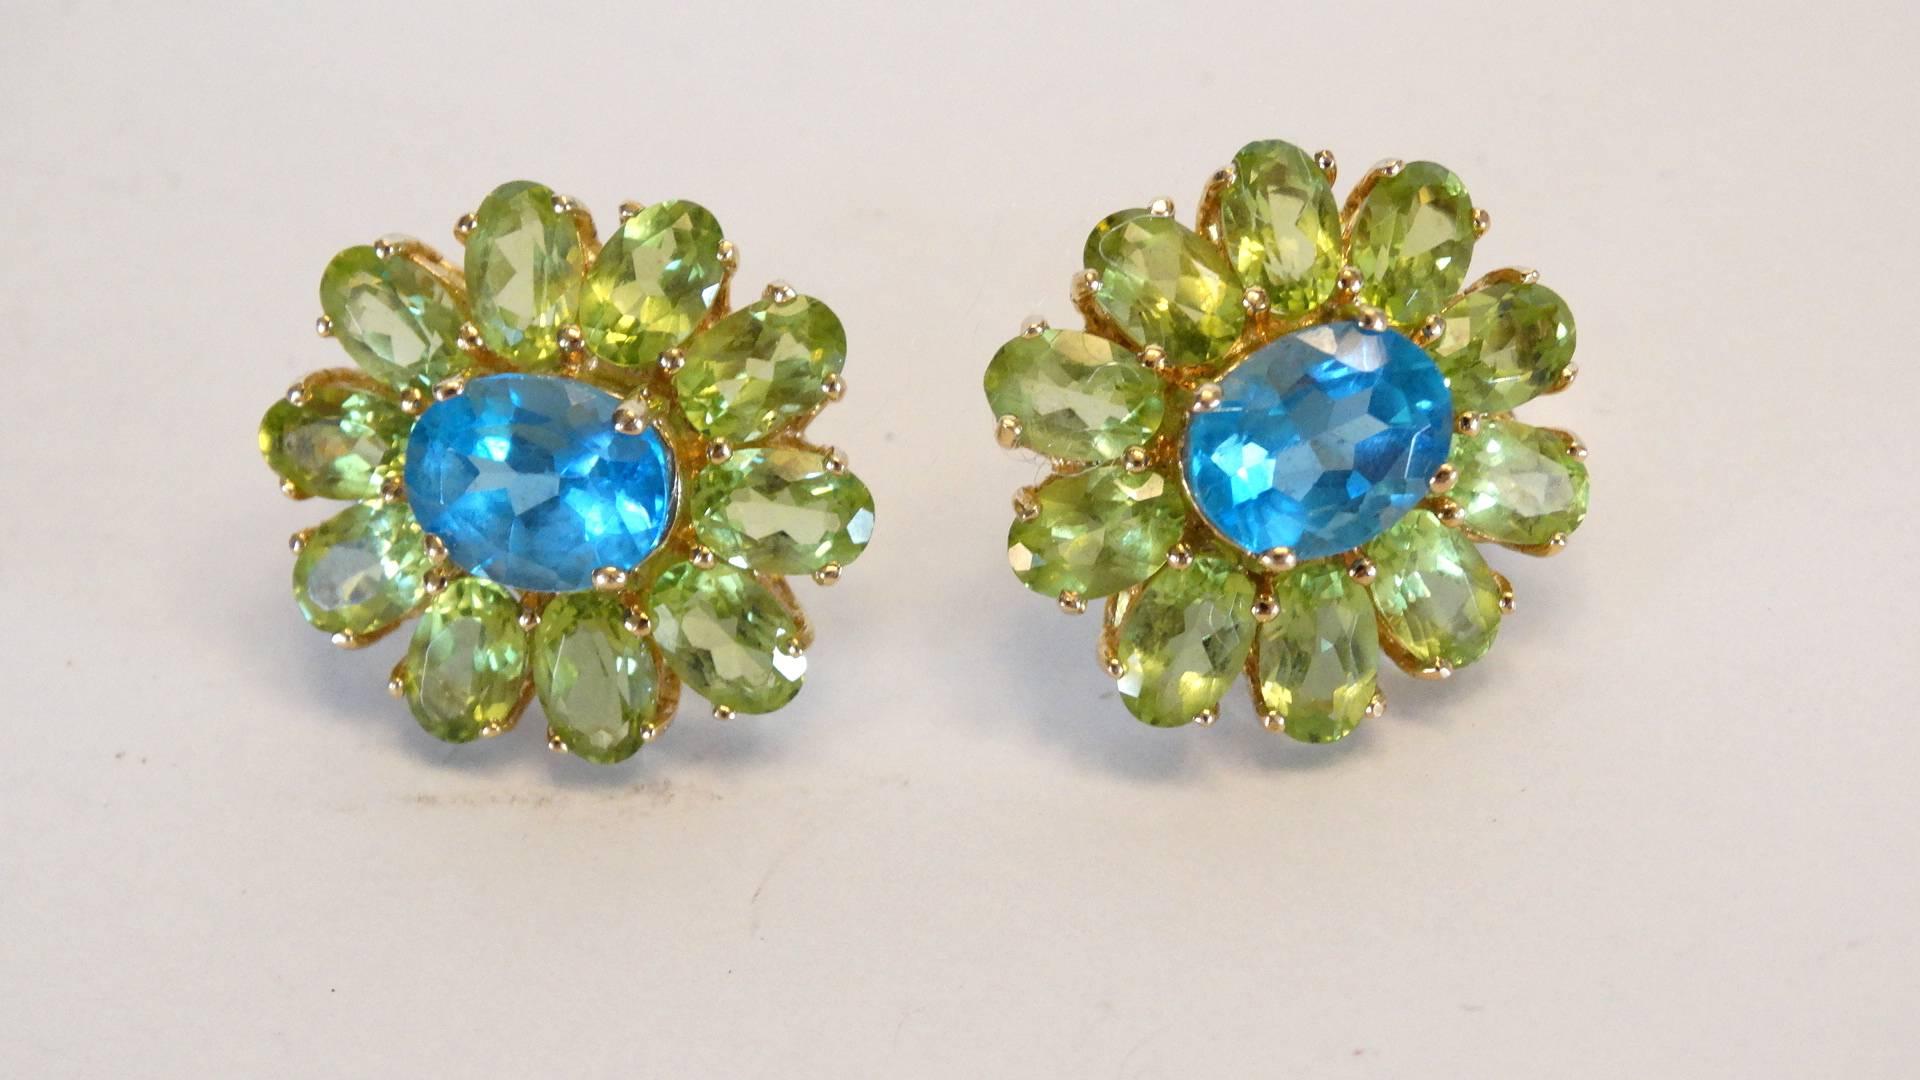 Oval Cut Blue Topaz & Green Peridot Flower Earrings 14k